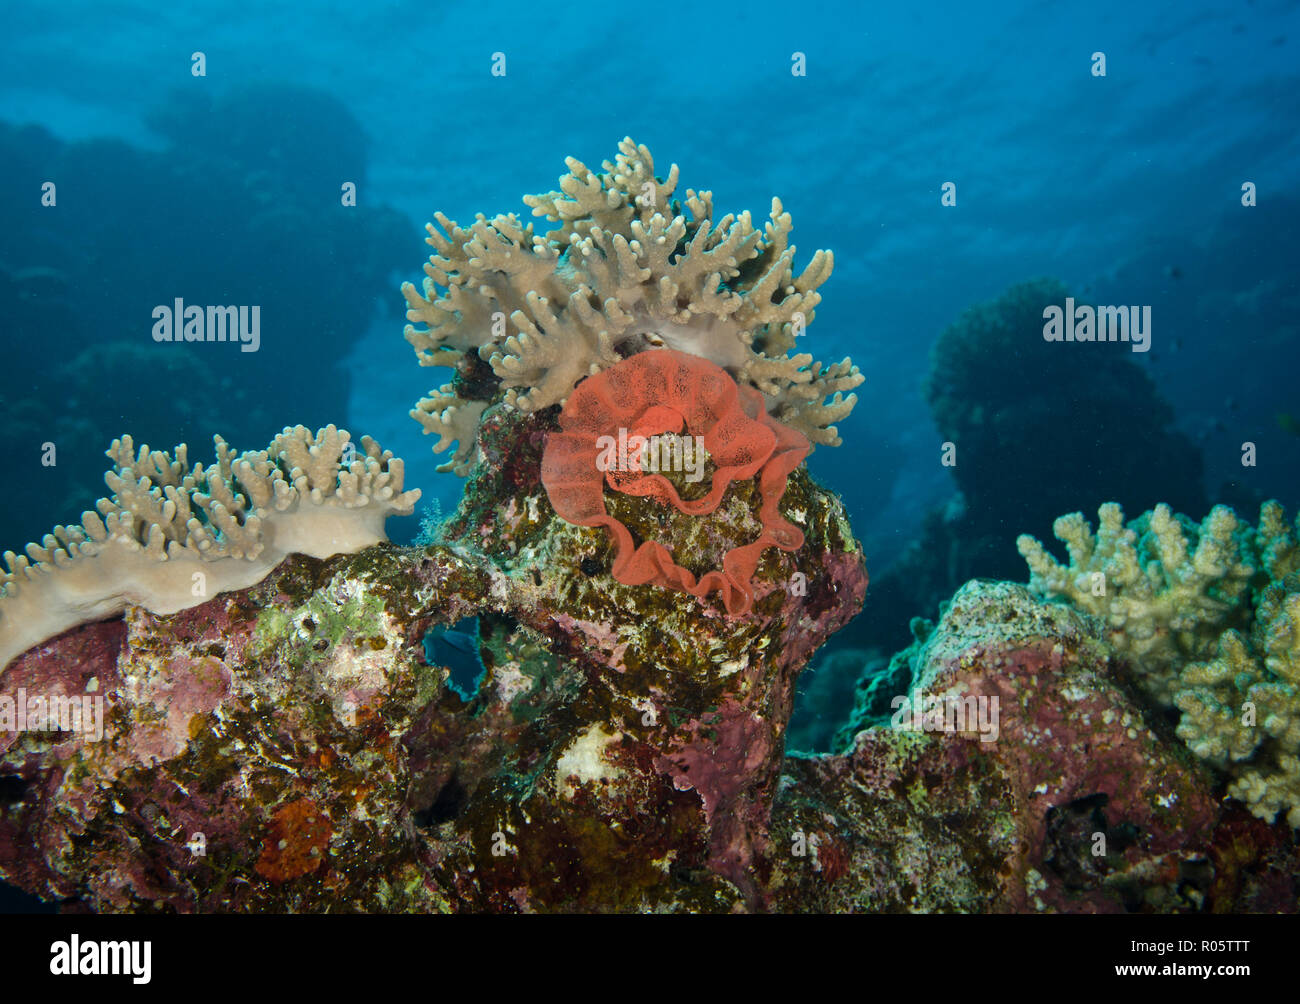 Ruban d'oeufs de danseuse espagnole, Hexabranchus sanguineus, sur les récifs coralliens, hamata, Egypte Banque D'Images